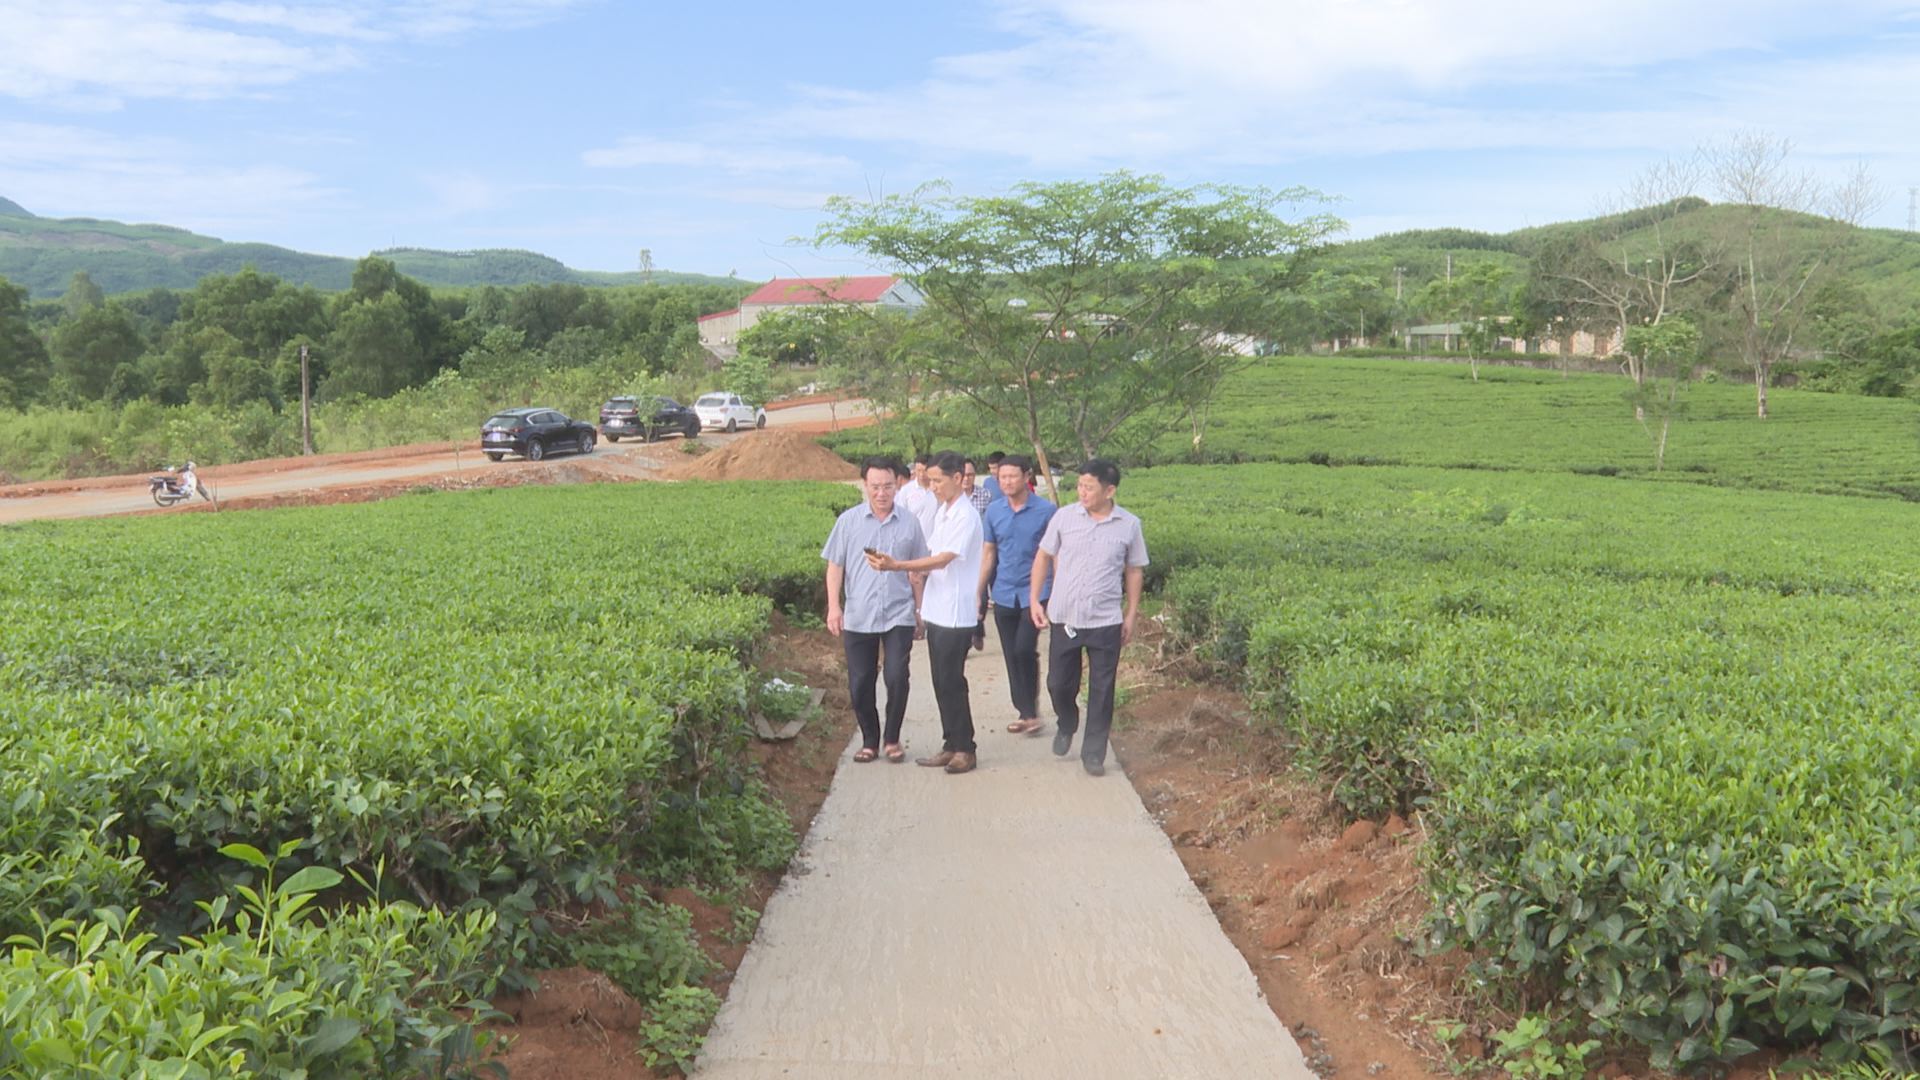 Họp lấy ý kiến về Phương án xây dựng điểm check-in trải nghiệm đồi chè tại thôn Nam Sơn, xã Kỳ Trung